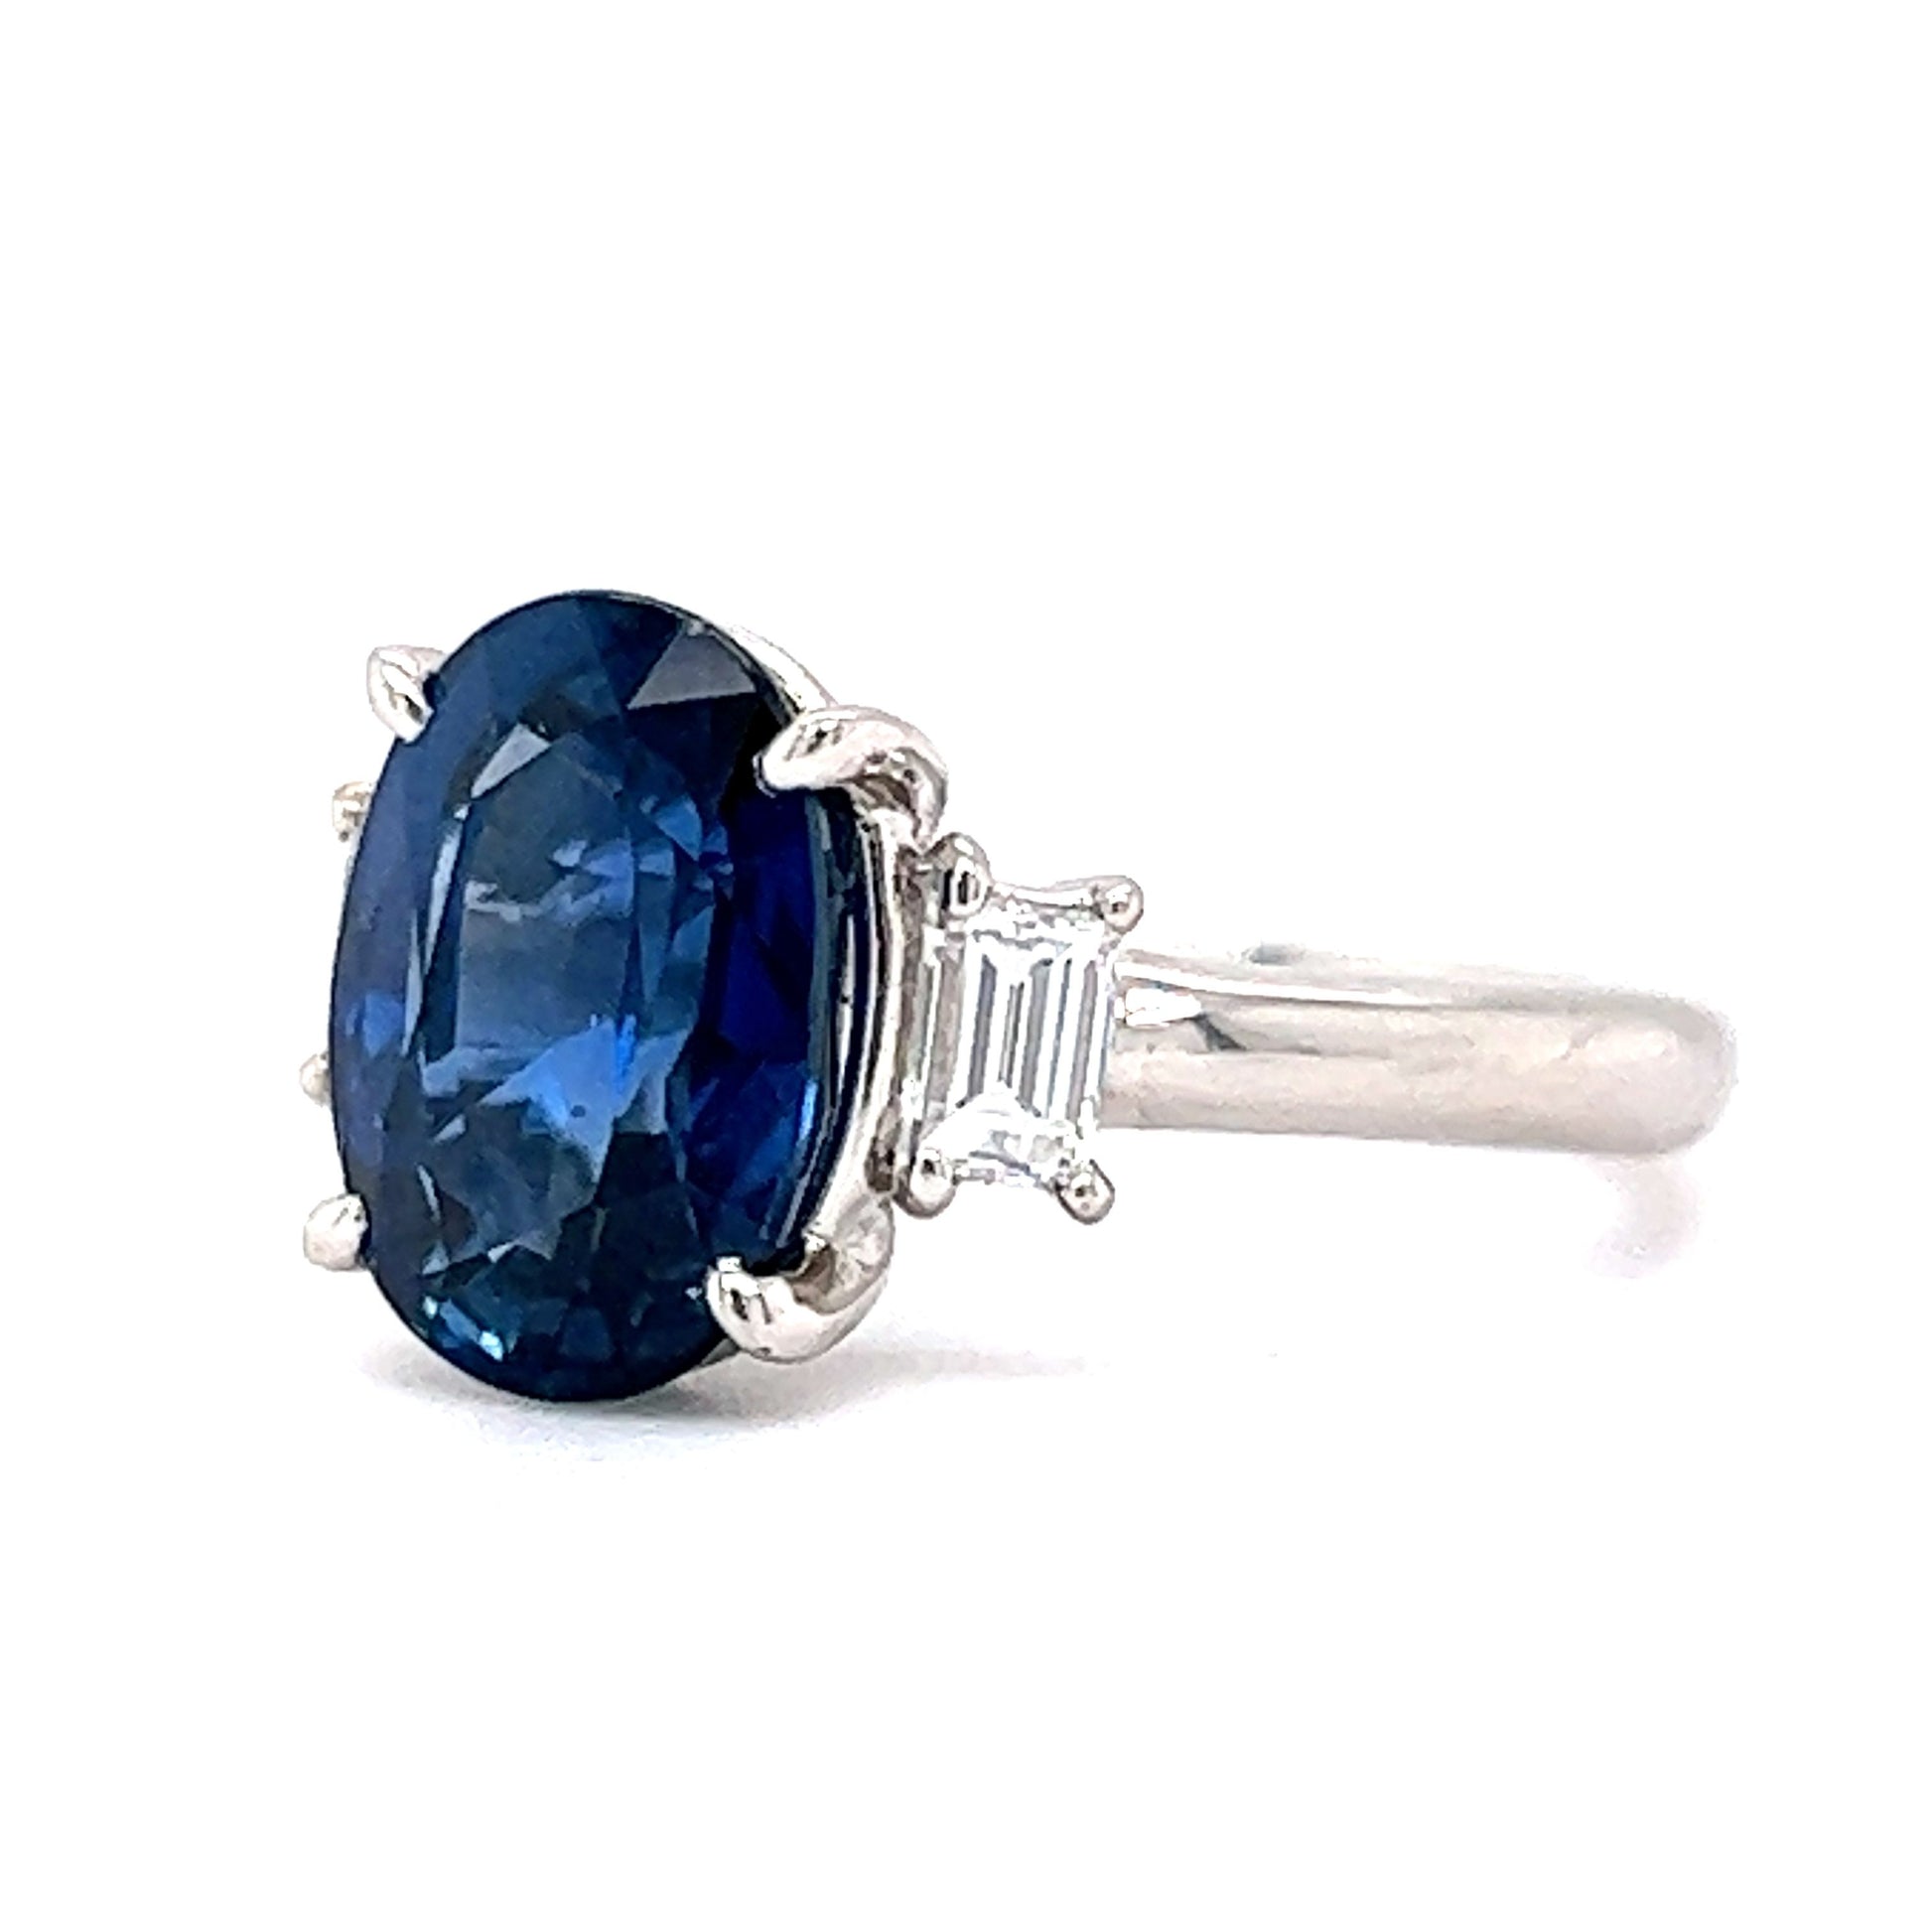 3.99 Thai Sapphire & Diamond Engagement Ring in Platinum